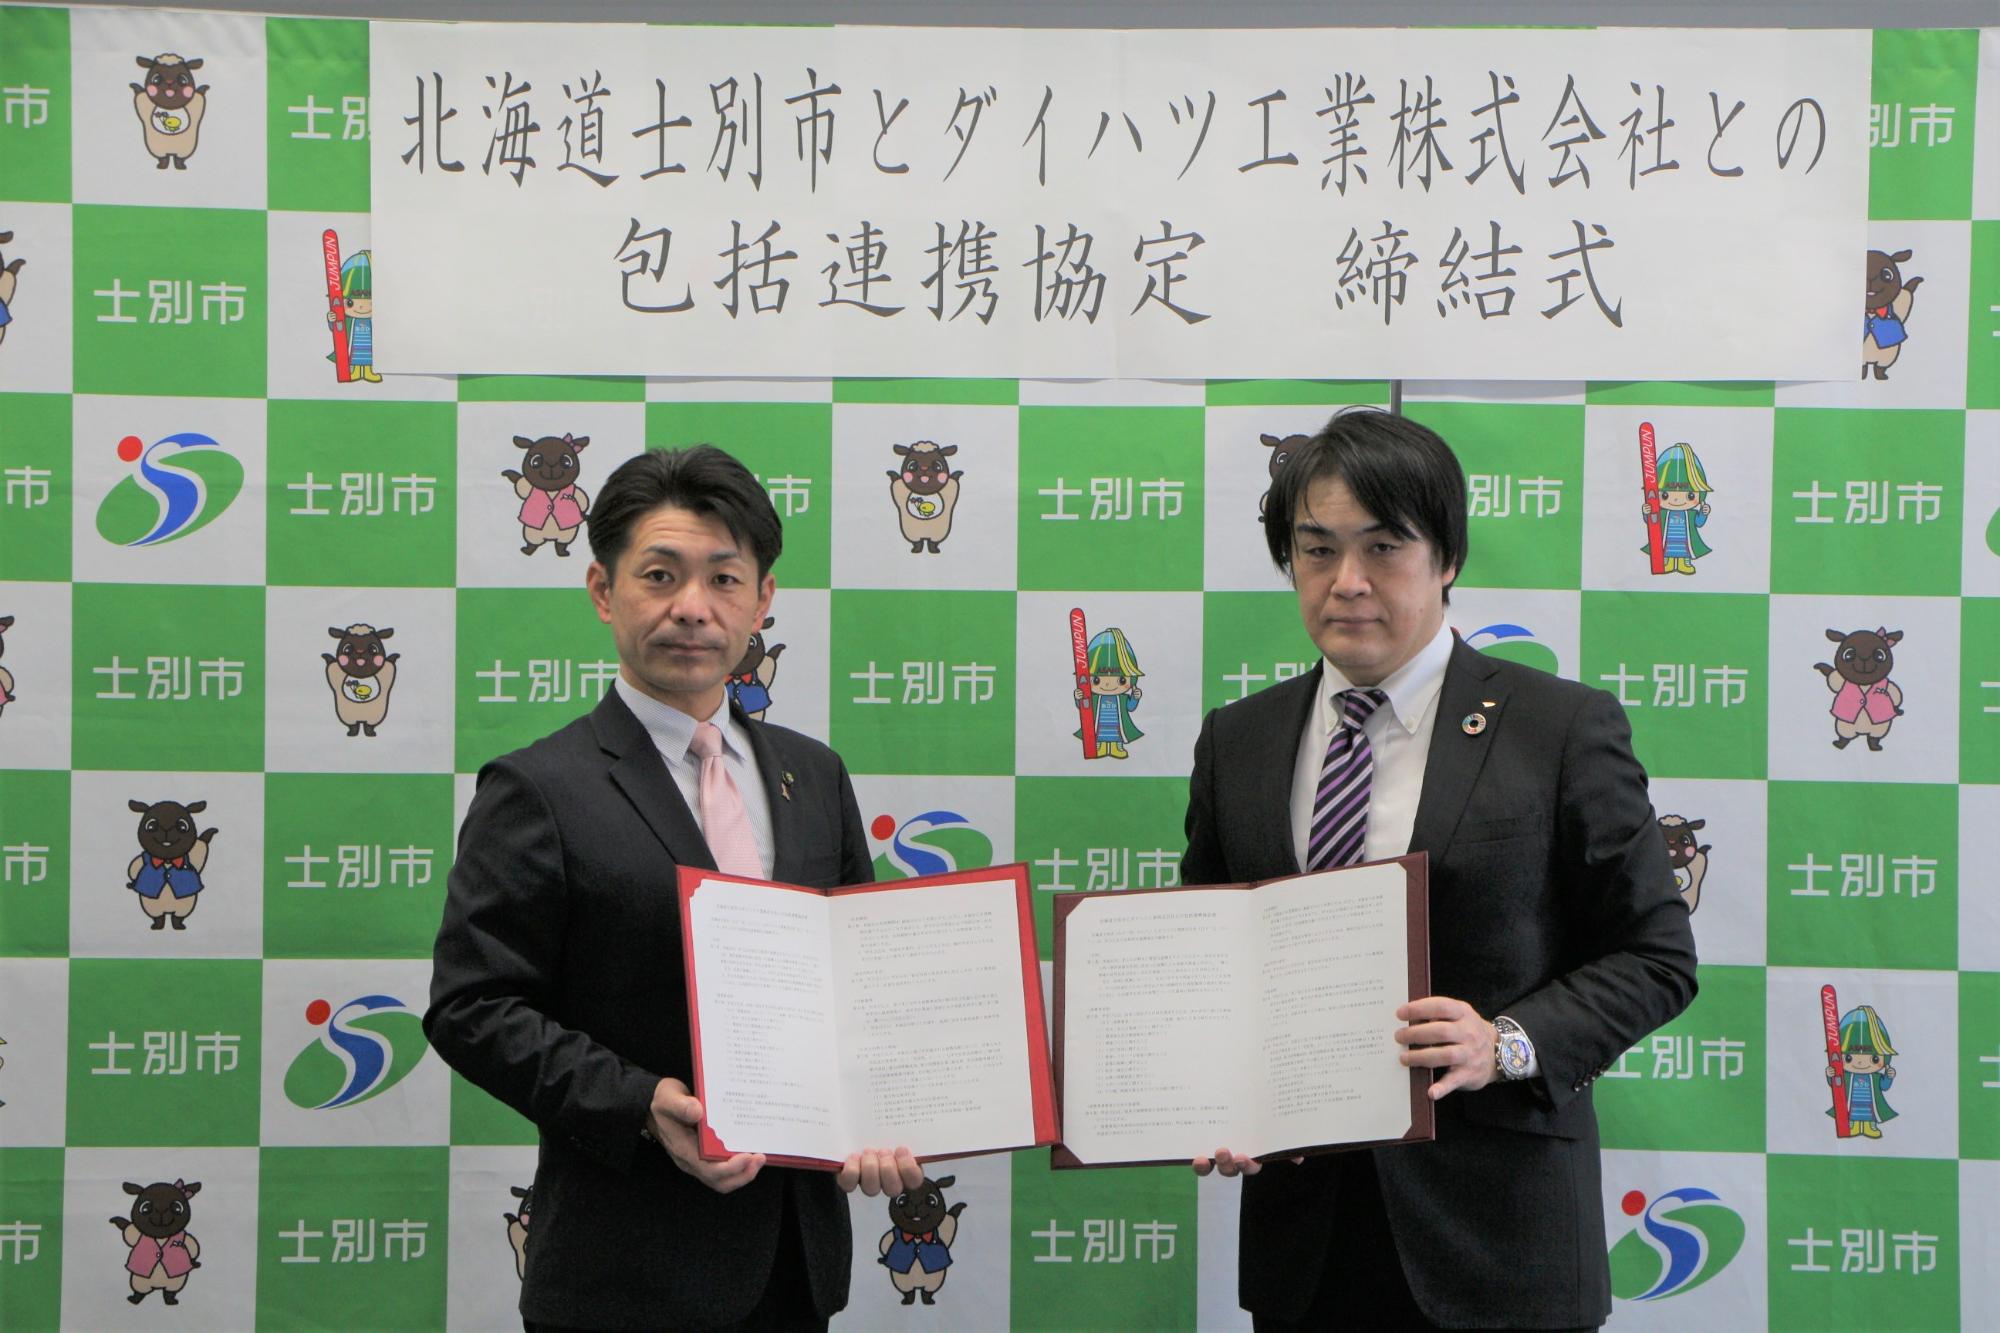 北海道士別市とダイハツ工業株式会社との包括連携協定締結式で市長と豊田統括部長が協定書を見せながら記念撮影をしている写真